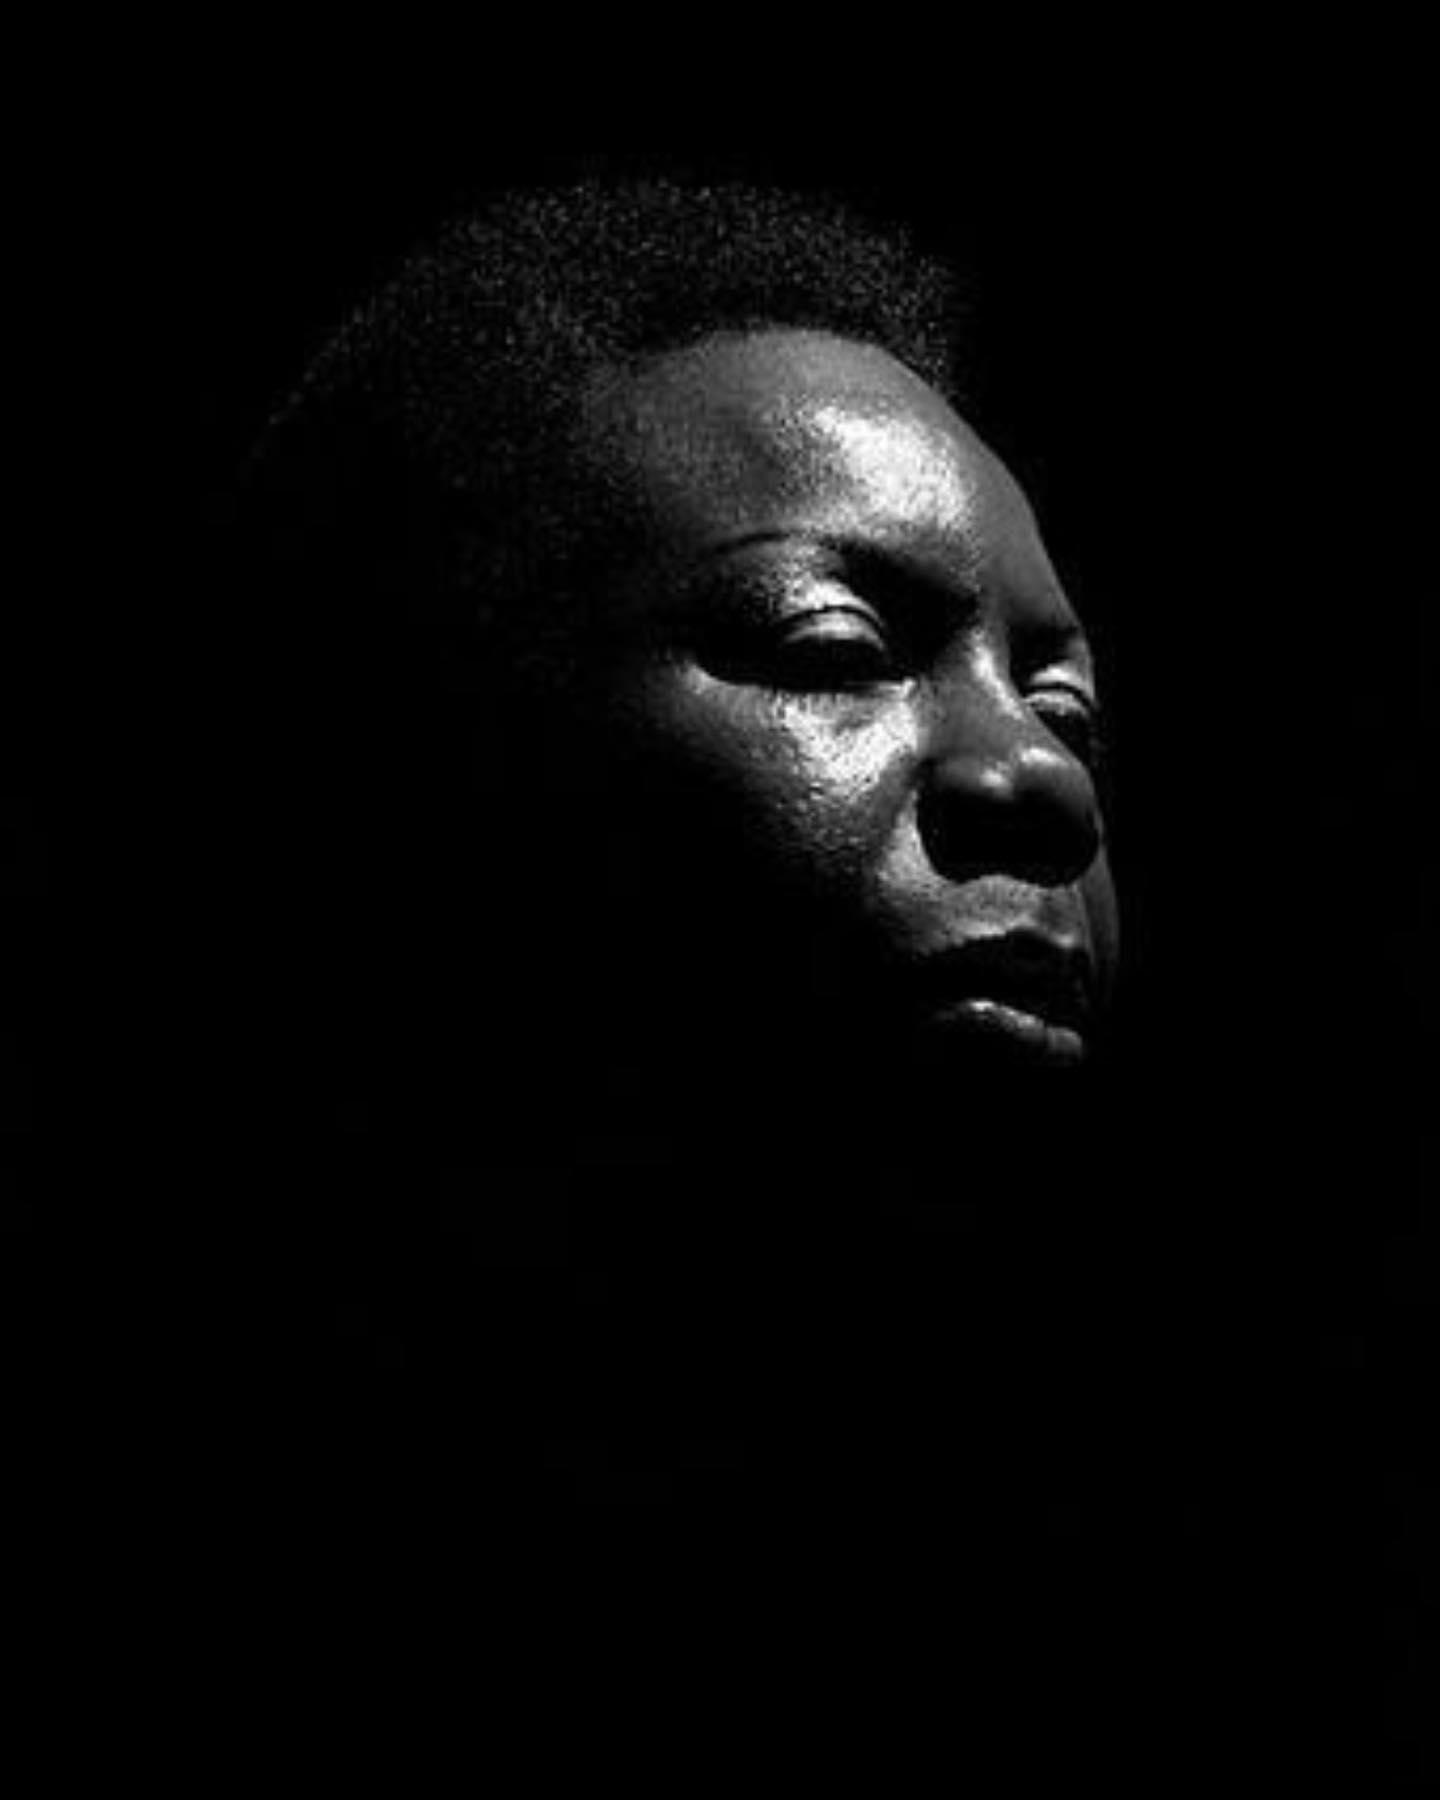 Jazz, Blues And Lounge Music - Nina Simone by David Corio#ninasimone #jazz #blues #gospel #soul #sin